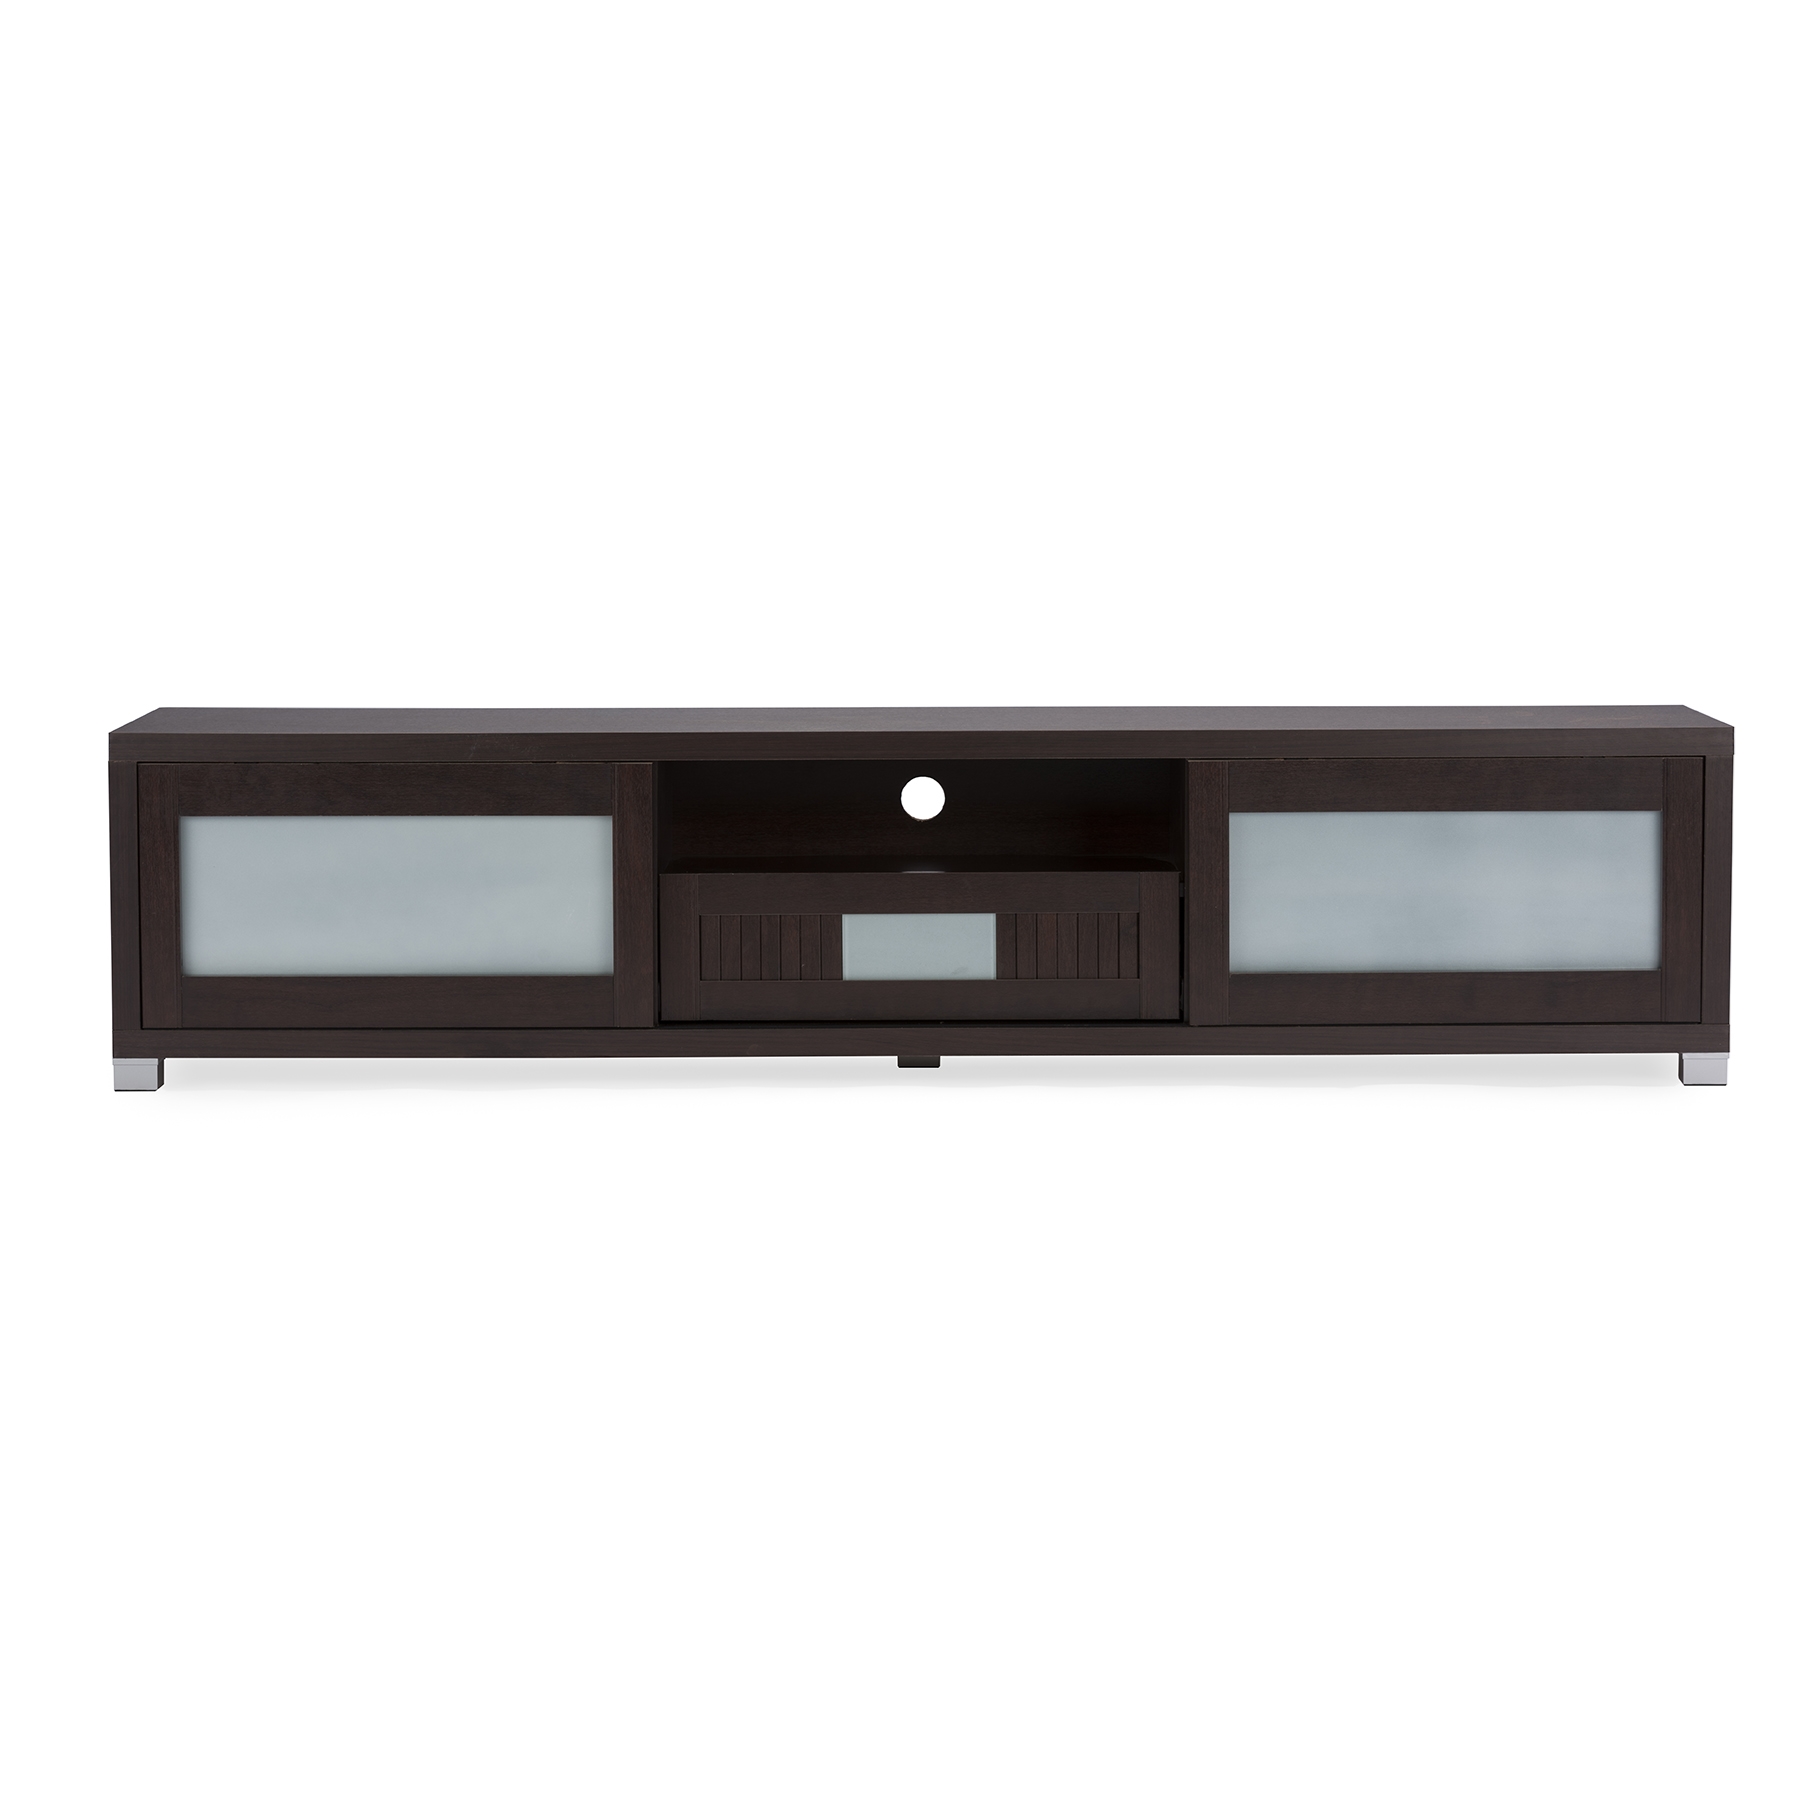 Baxton Studio Gerhardine Dark Brown Wood 70 Inch Tv Cabinet With 2